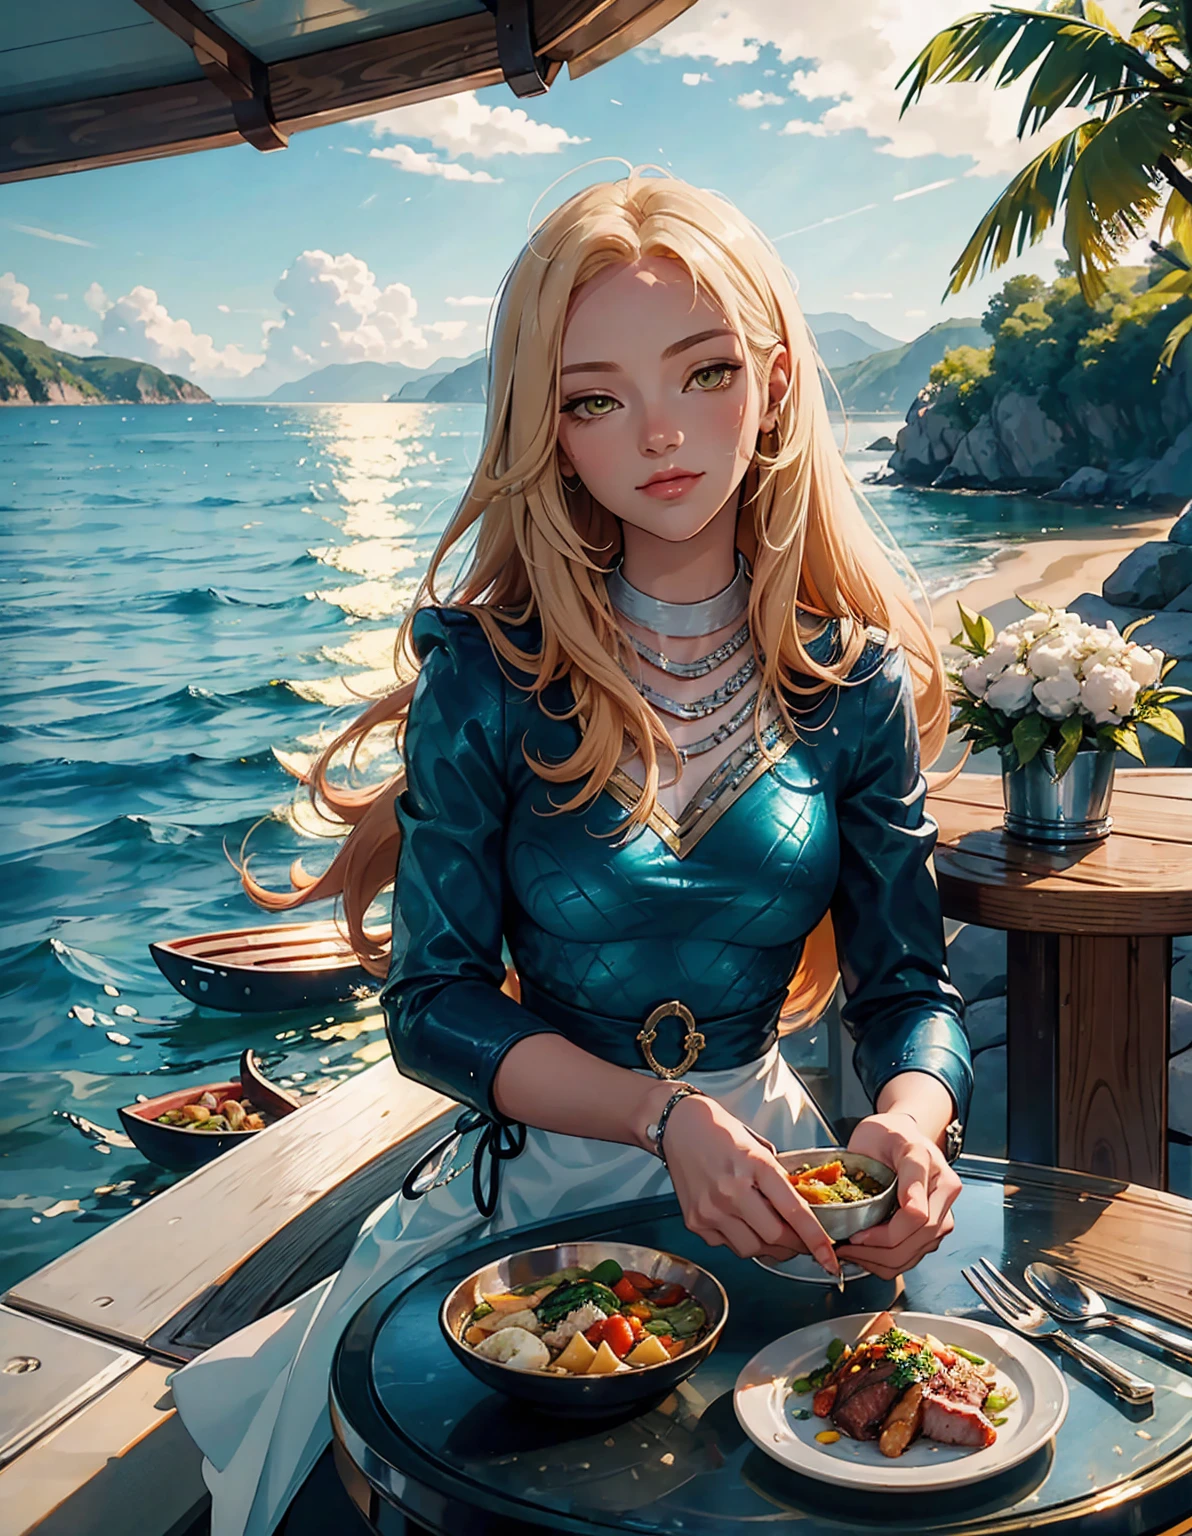 황금빛 머리와 노란 눈을 가진 젊은 여성이 테이블에 앉아 있다, 애니메이션 스타일로 해변가에서 맛있는 음식 먹기. 배경에는 바다가 내려다보이는 바위 절벽이 있습니다., 그 위에 떠 있는 배들, 녹색 식물, 그리고 그 사이로 그녀의 얼굴을 비추는 햇빛. 흰색 옷을 입고 편안한 표정을 짓고 있는 그녀. 한쪽에는 밥 등 각종 반찬이 놓여있다, 채소, 생선과 고기, 따뜻한 분위기를 조성하다. --AR 3:4 --니지 6
